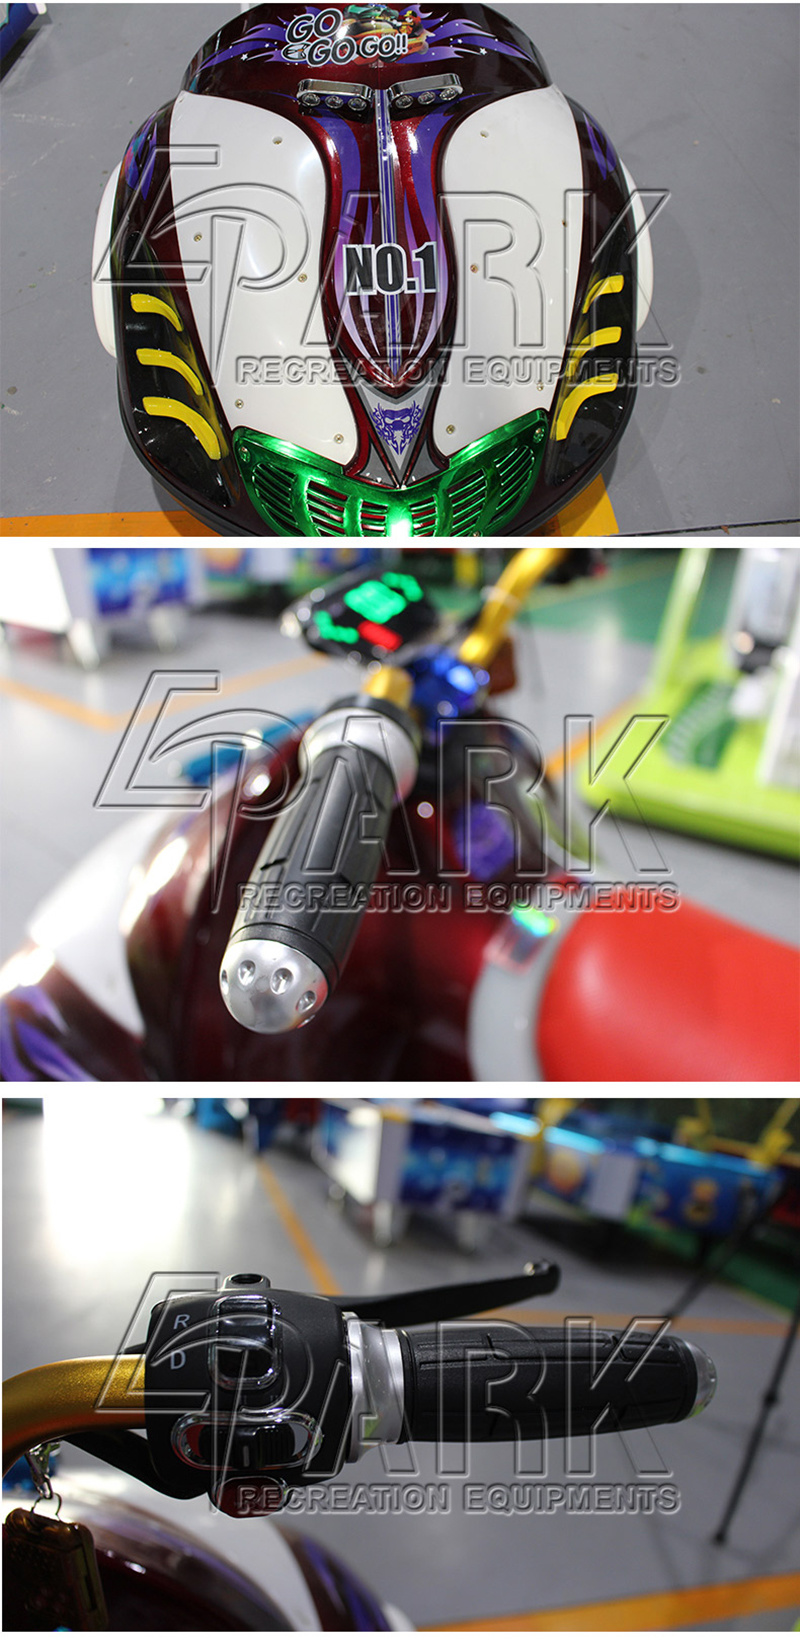 Cool Lighting Design Electronic Car Motor Kiddy Ride Game Machine